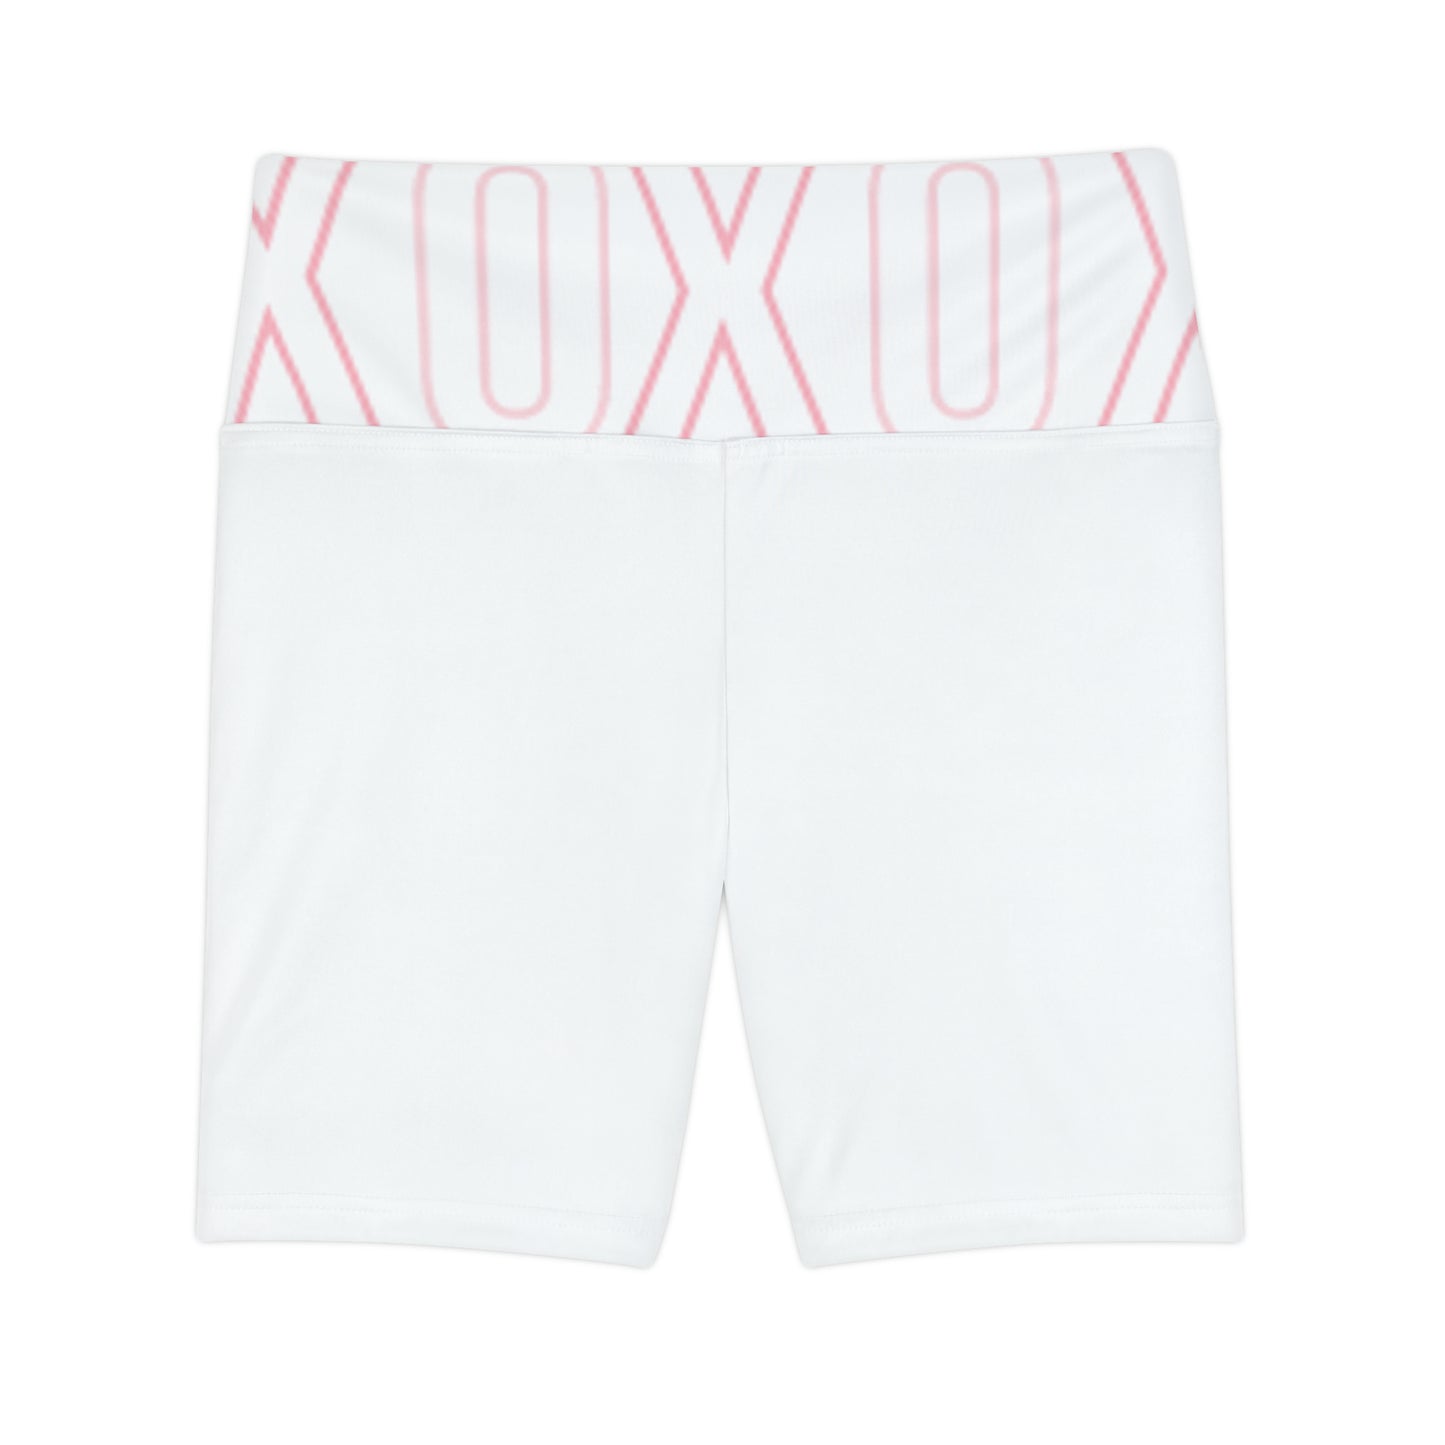 XOXO Athletic Shorts